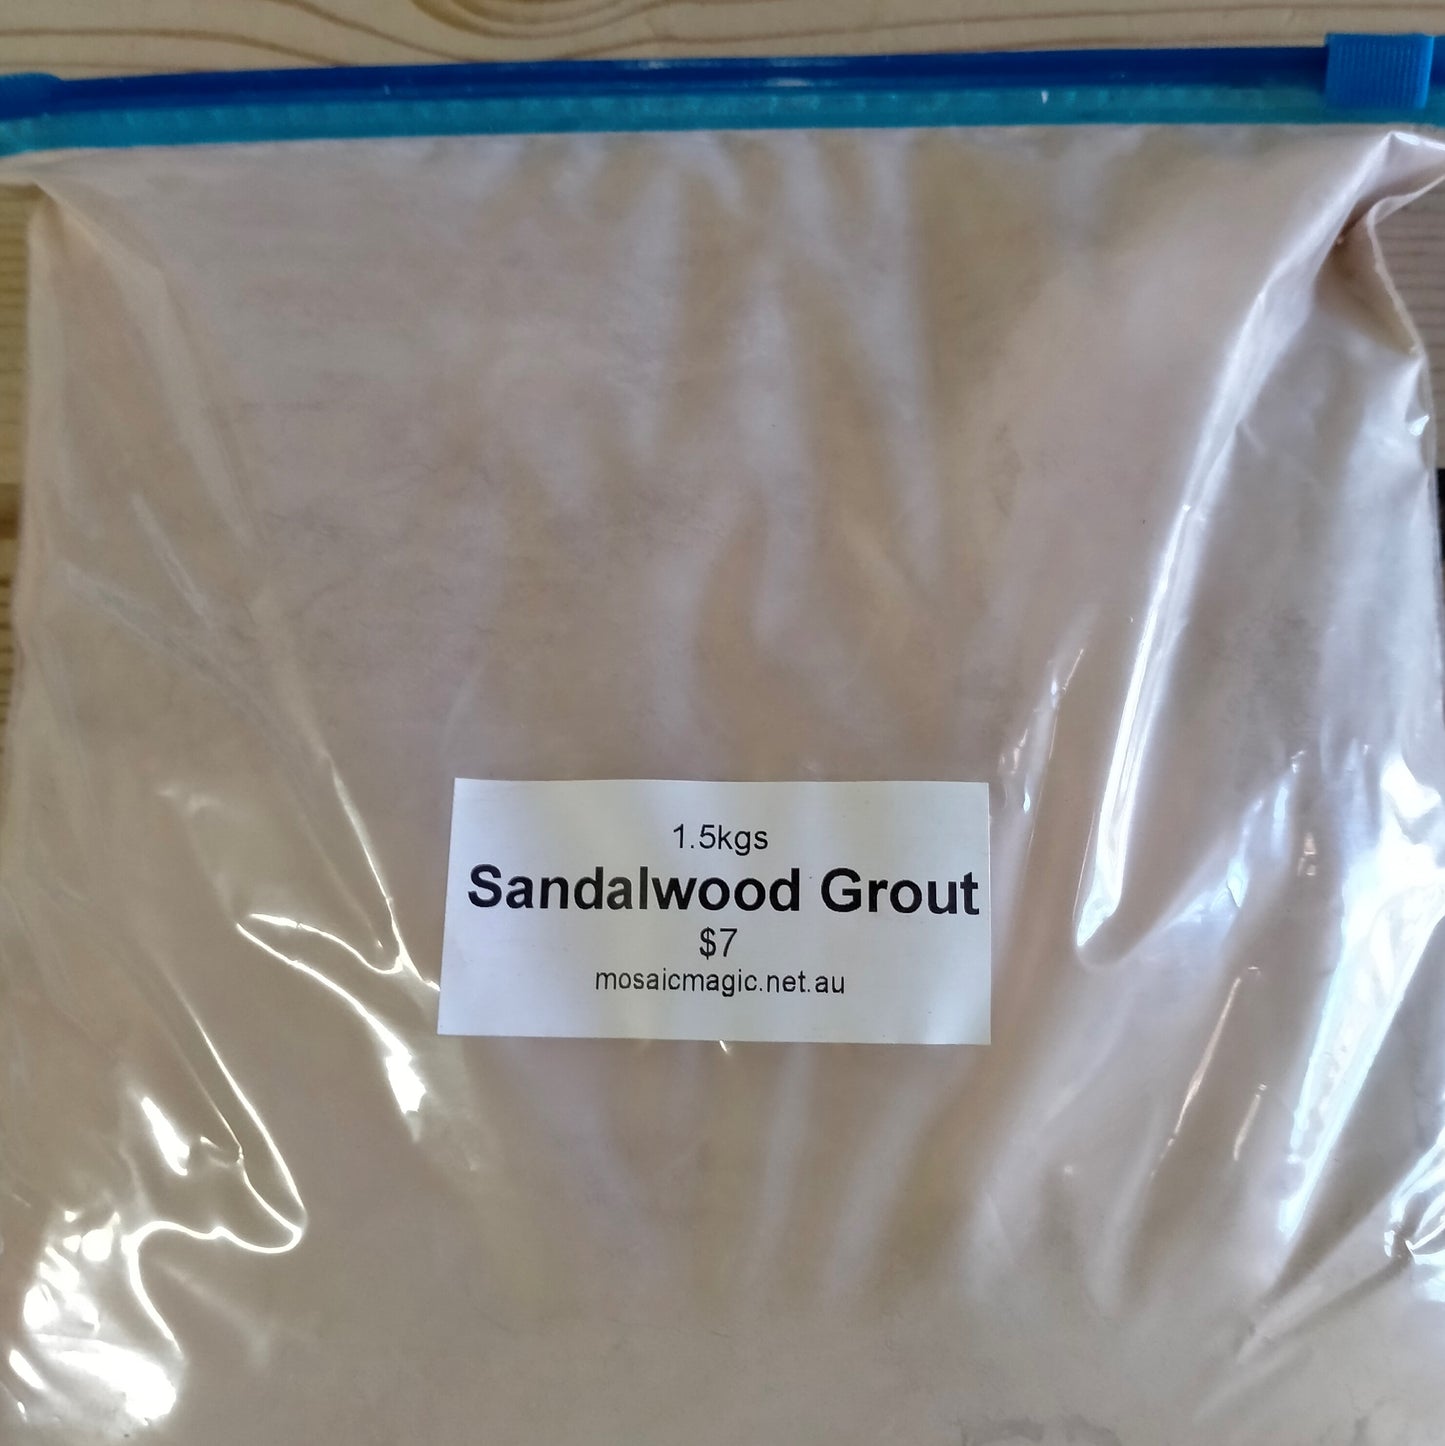 Sandalwood Grout 1.5kg Bag